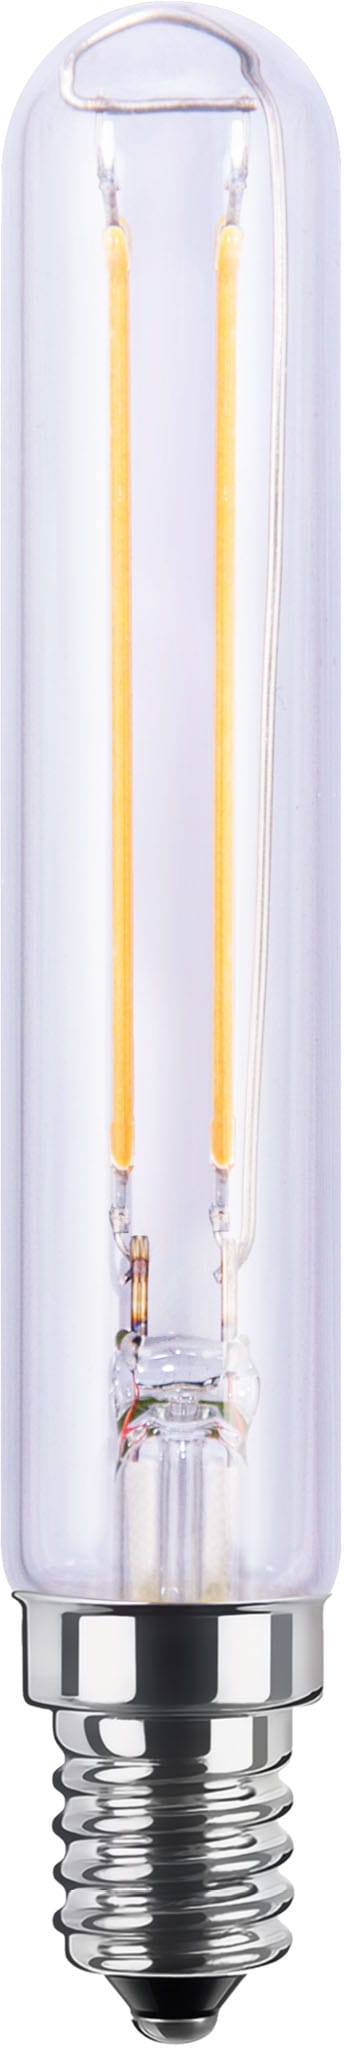 SEGULA LED-Leuchtmittel »LED Tube klar«, E14, Warmweiß, dimmbar, E27, Tube, klar